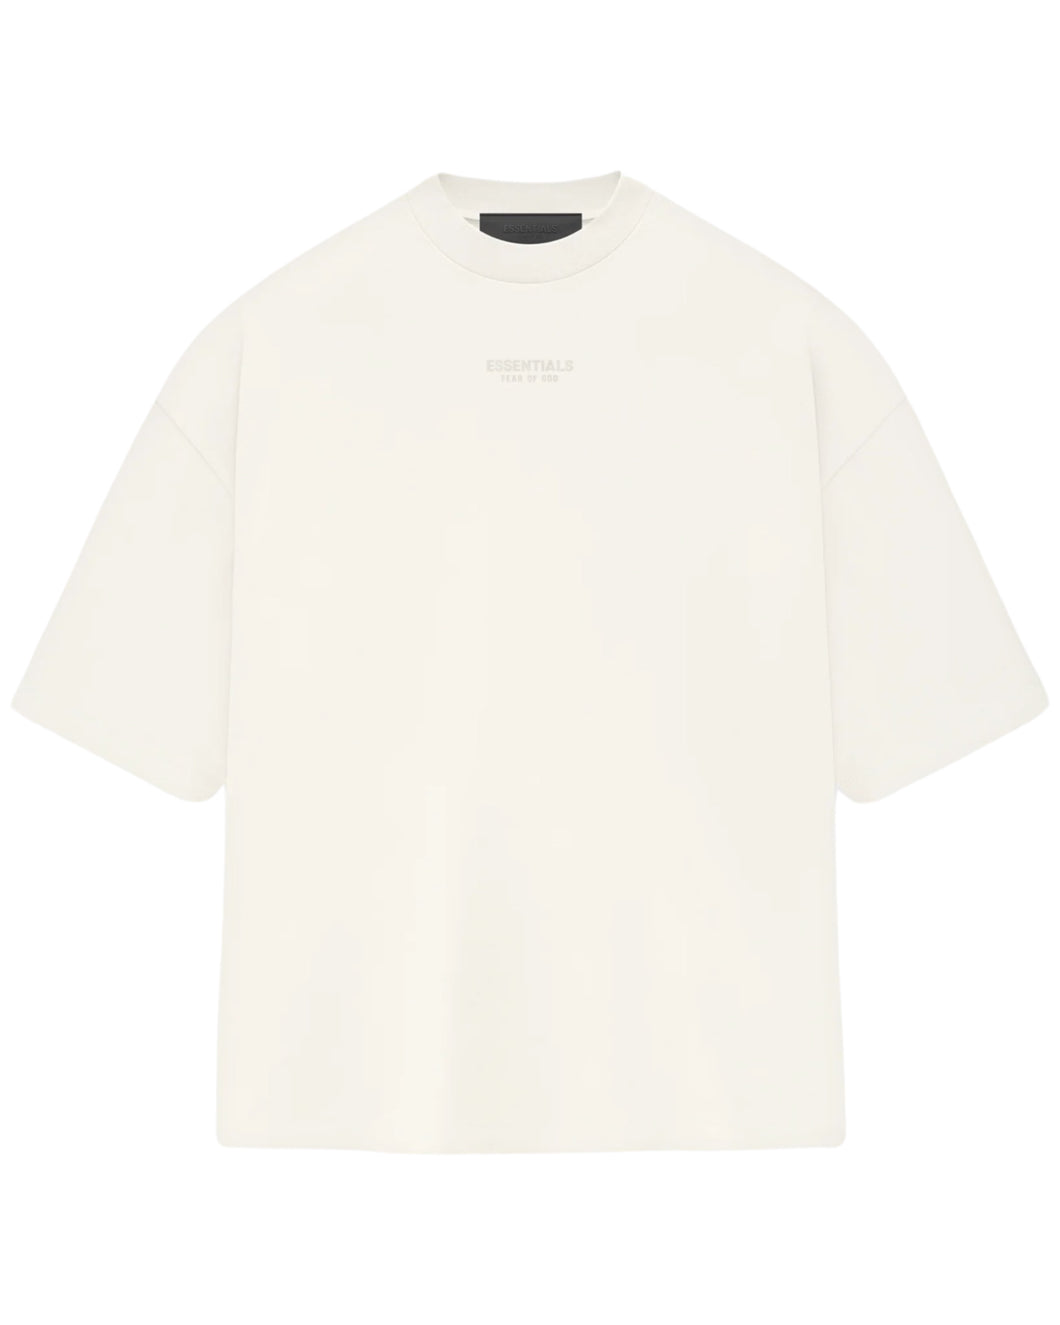 Fear of God Essentials SS23 Cloud Dance Short Sleeve T-Shirt ⏐ Multiple Sizes